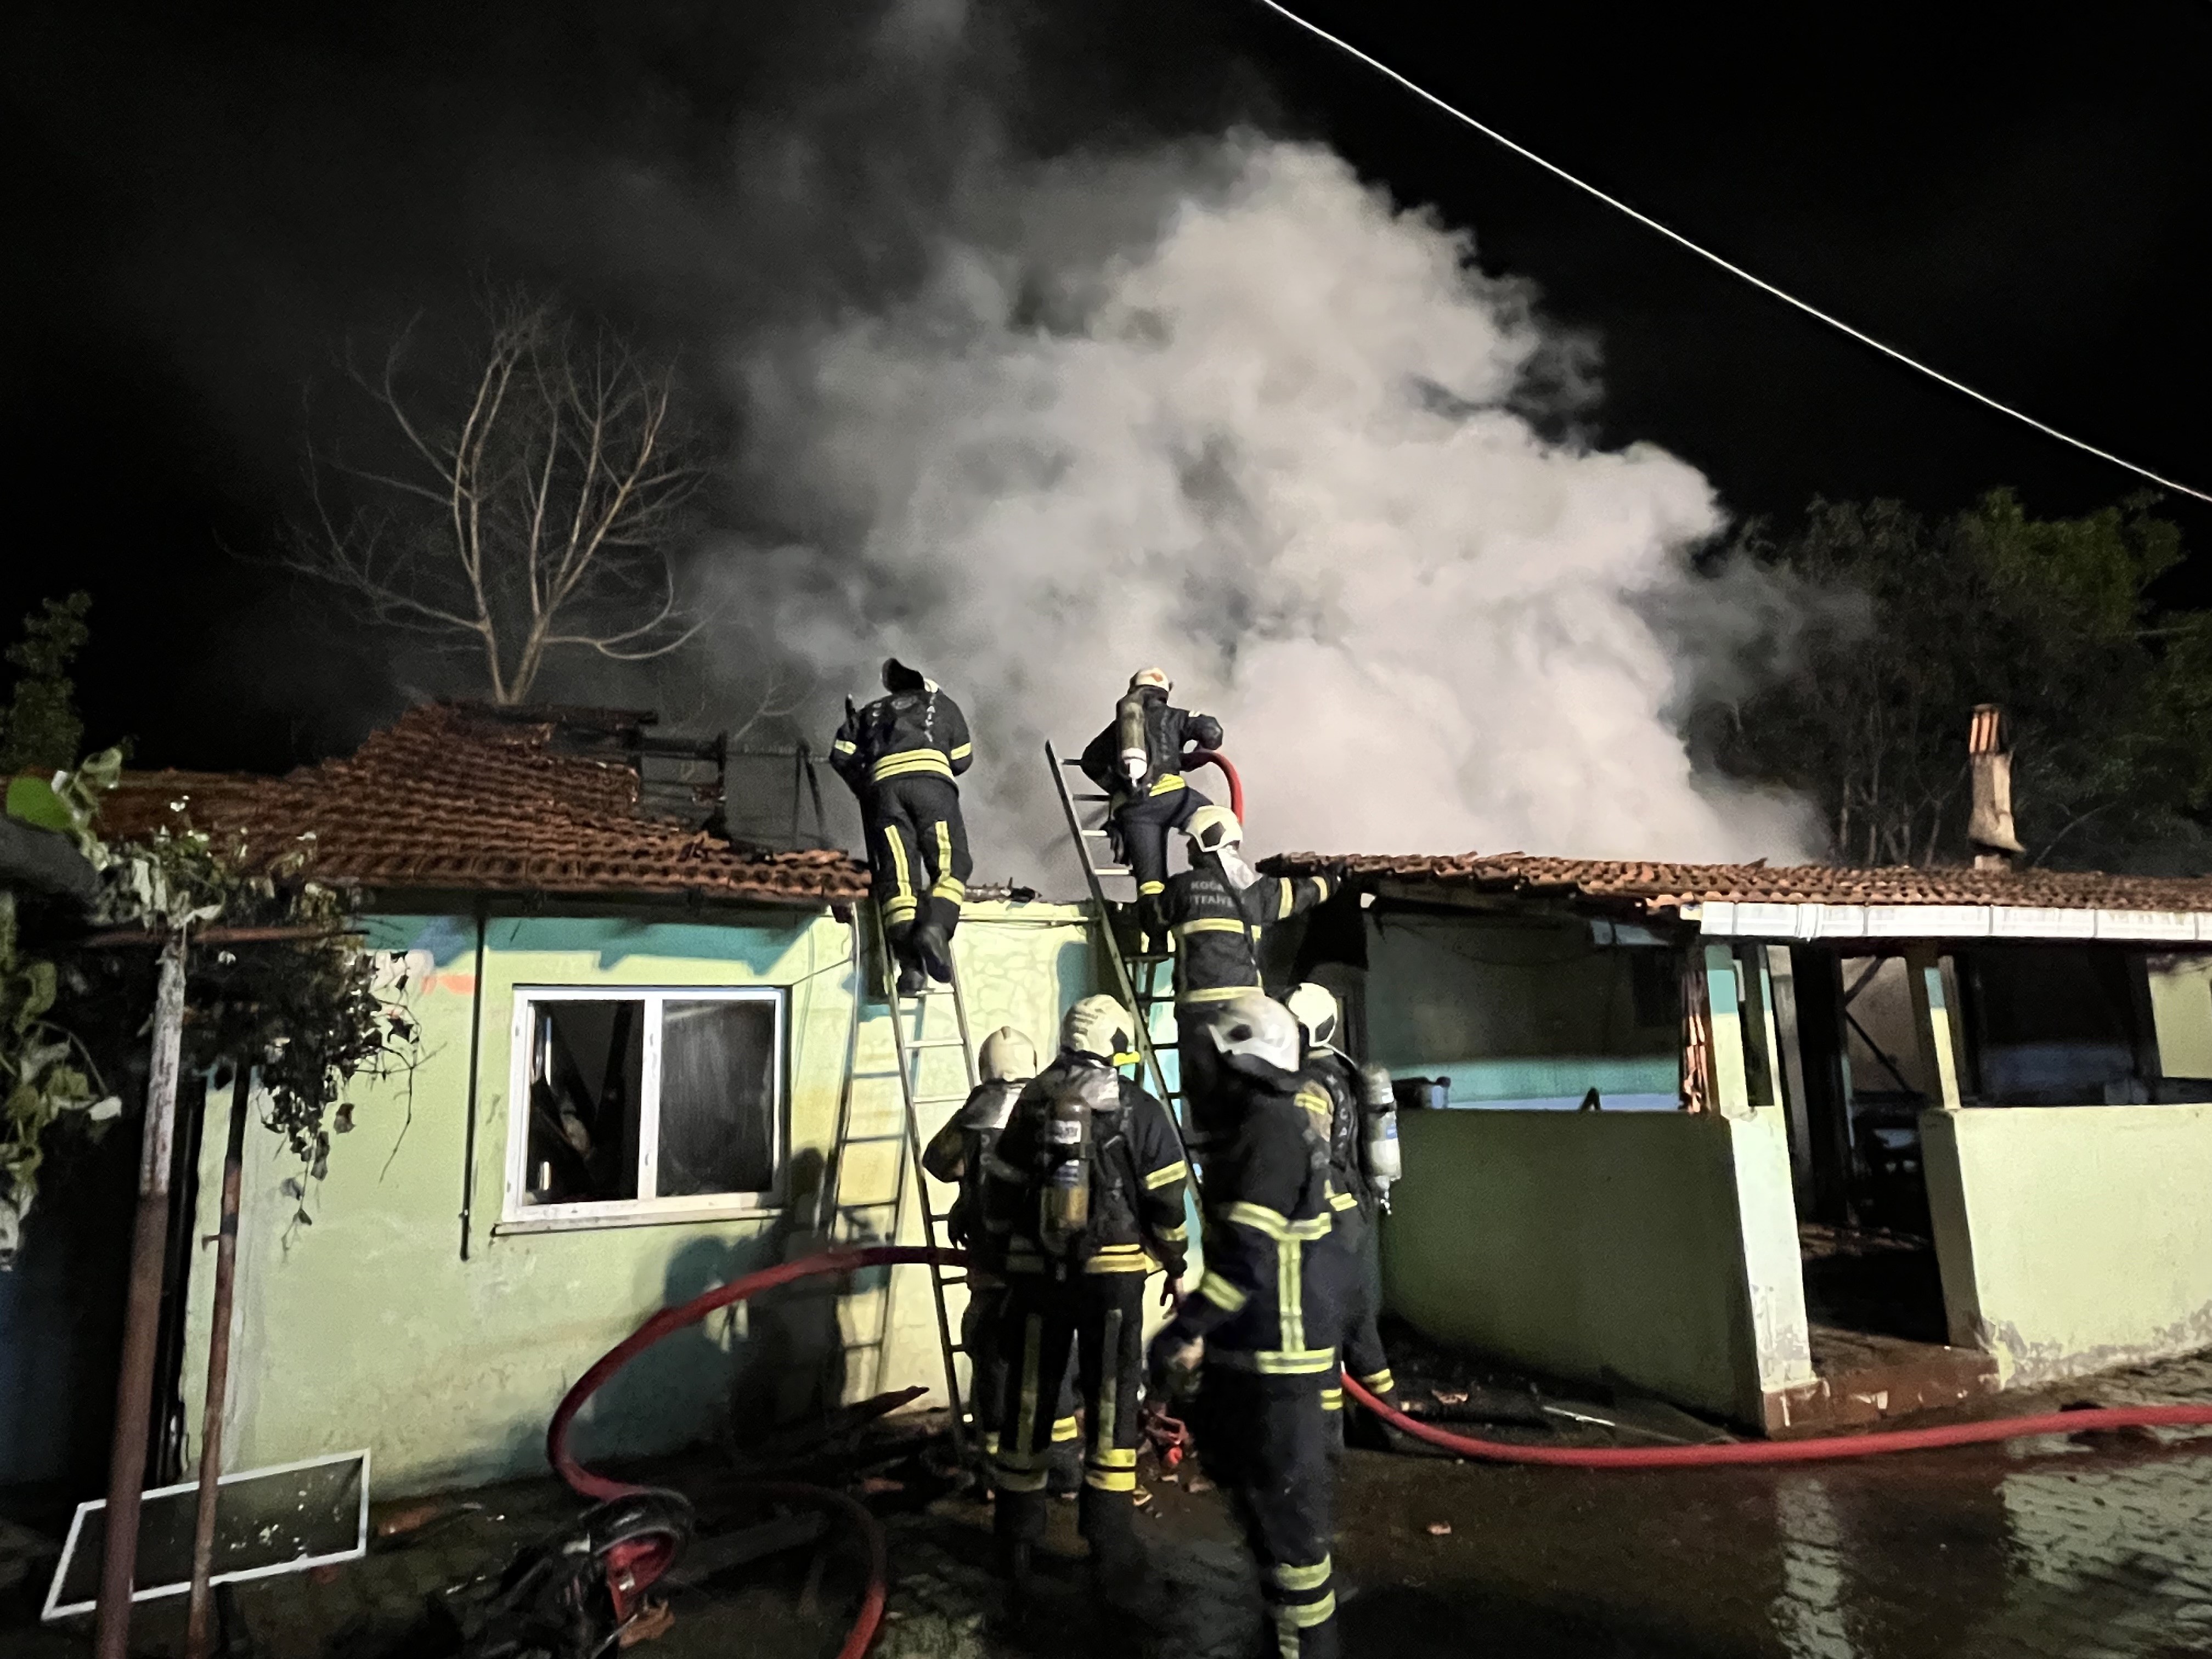 Yangın, dün saat 22.30 sıralarında Arslanbey Mahallesi İzmit Caddesi’ndeki tek katlı evde meydana geldi. Alkollü olduğu öğrenilen S.Y. (45), annesi K.Y. (75) içeride bulunduğu sırada evi ateşe verdi.